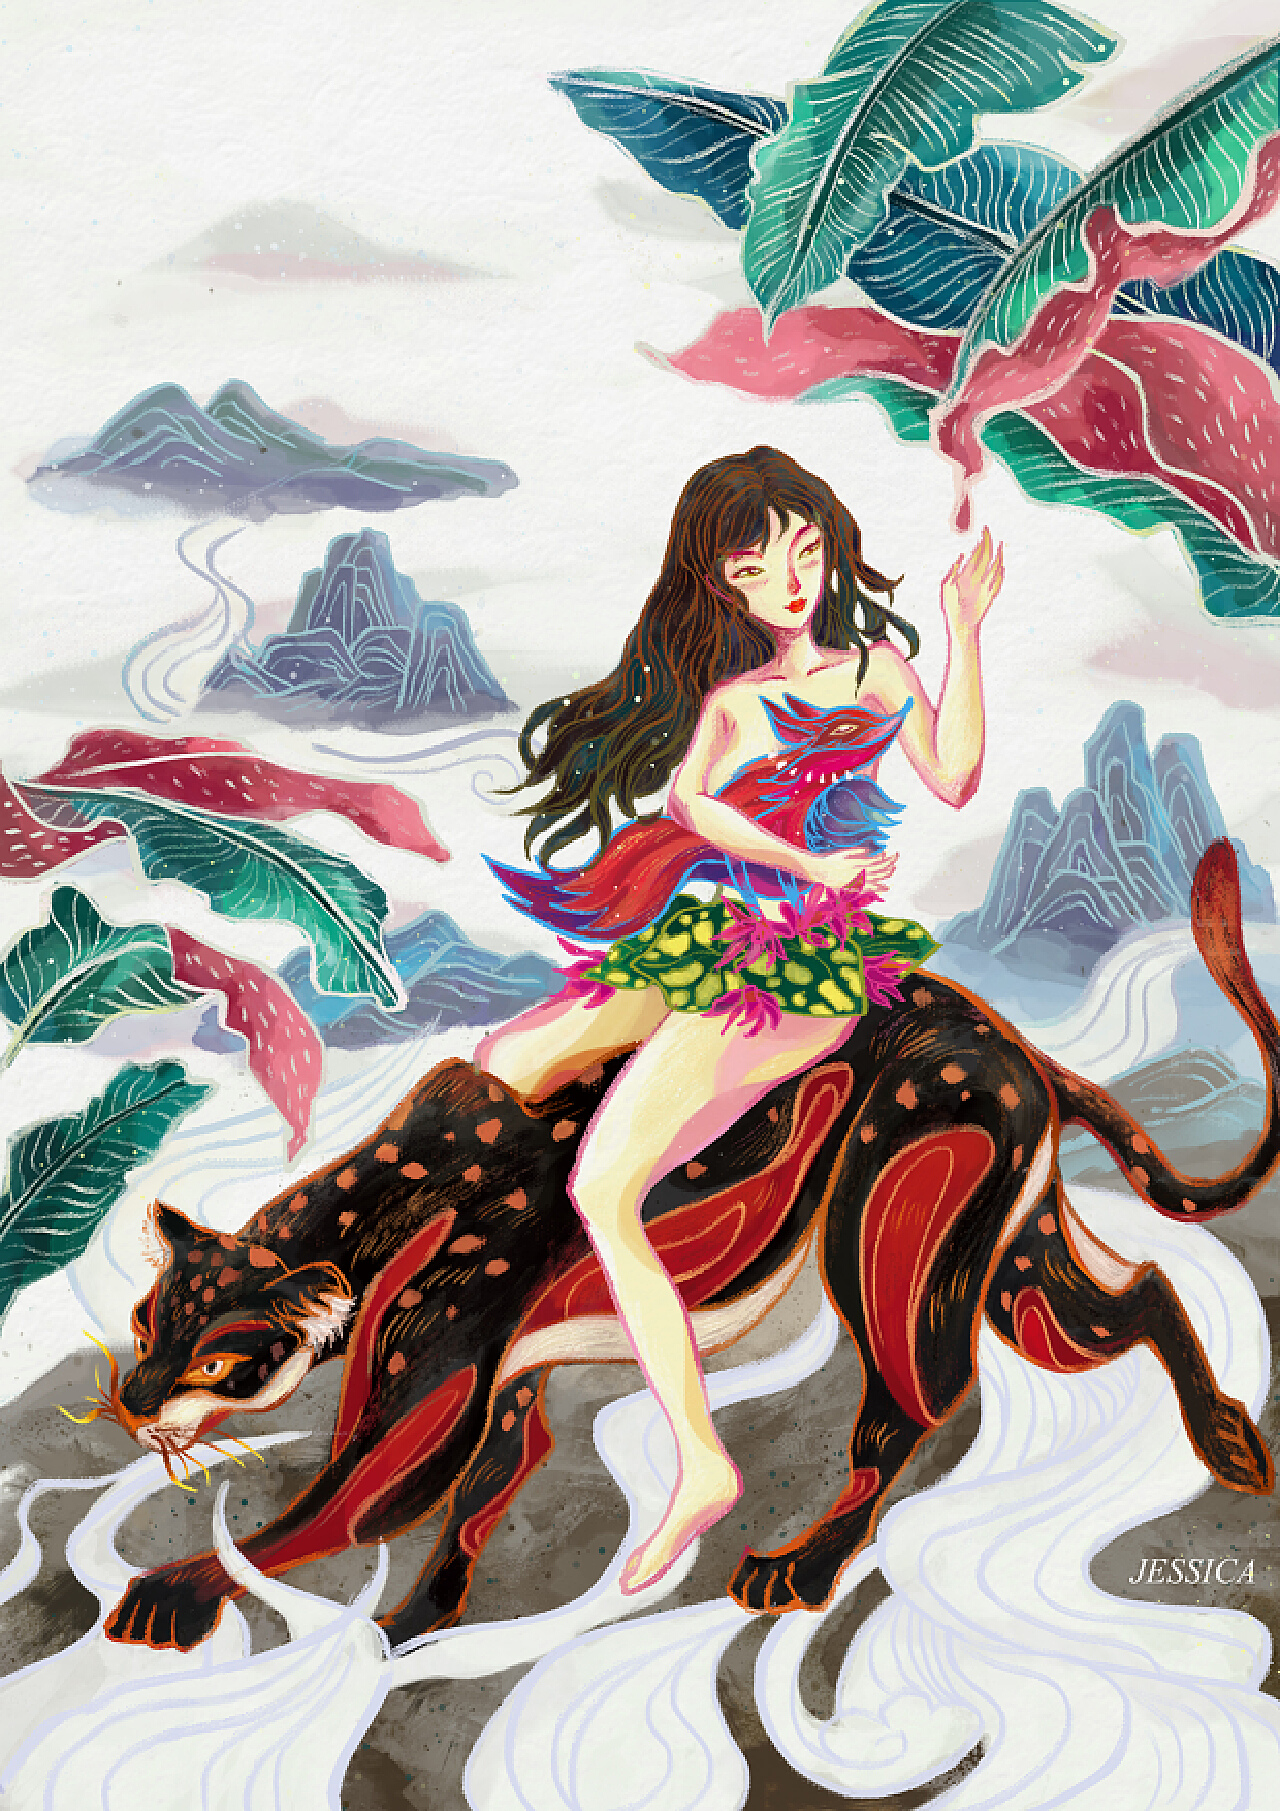 近现代画家笔下的中国神话第一美女——山鬼_屈原